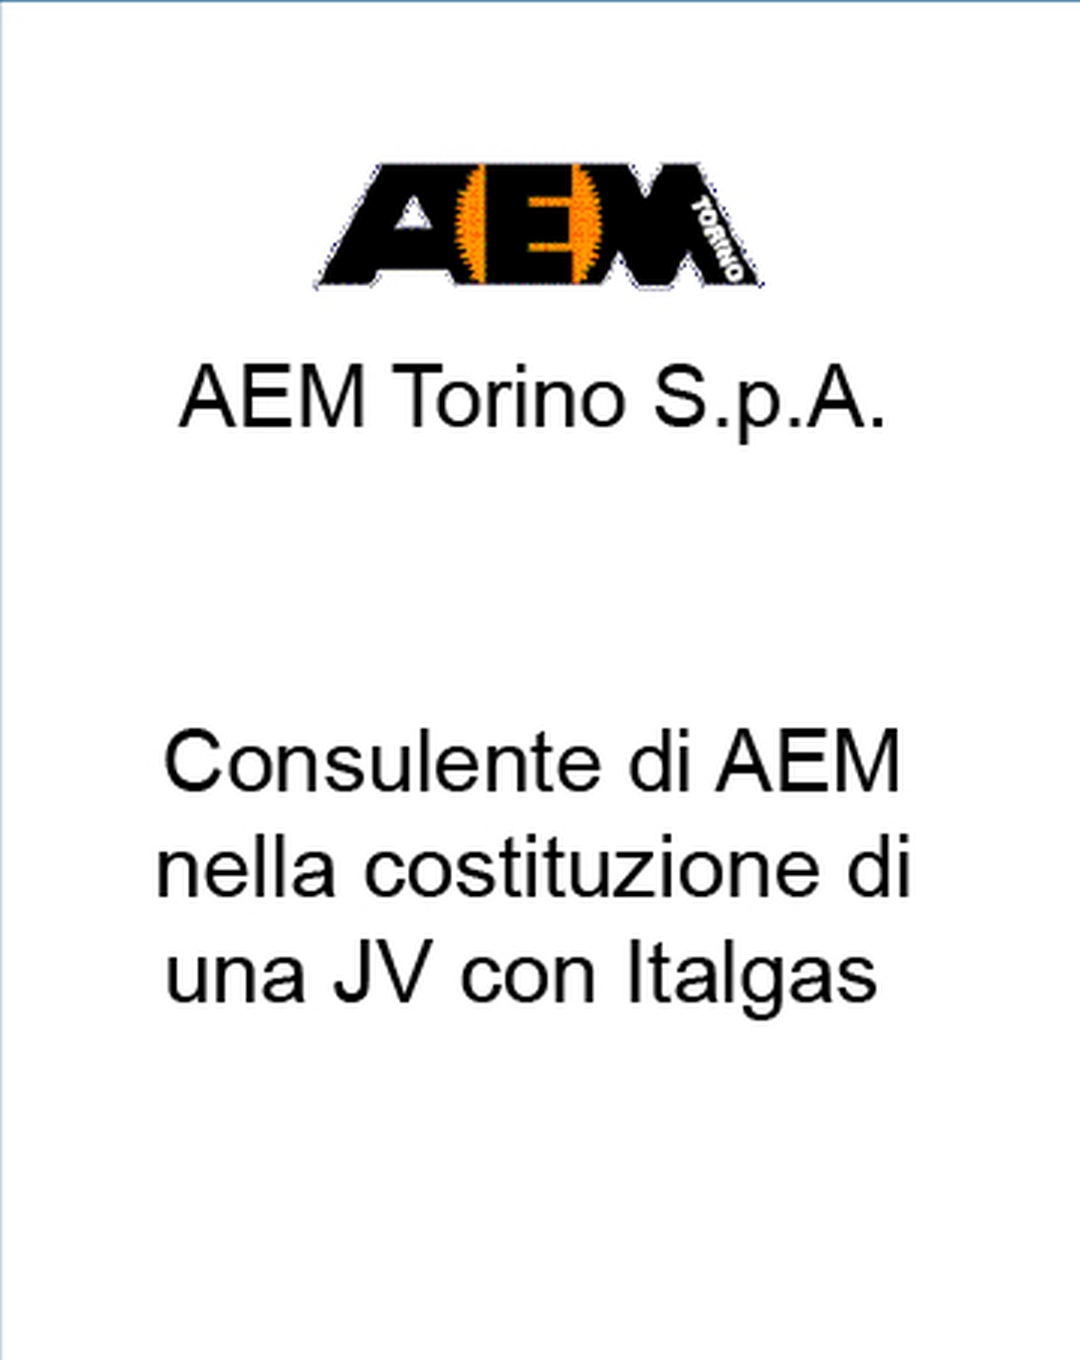 Consulente di AEM nella costituzione di una JV con Italgas